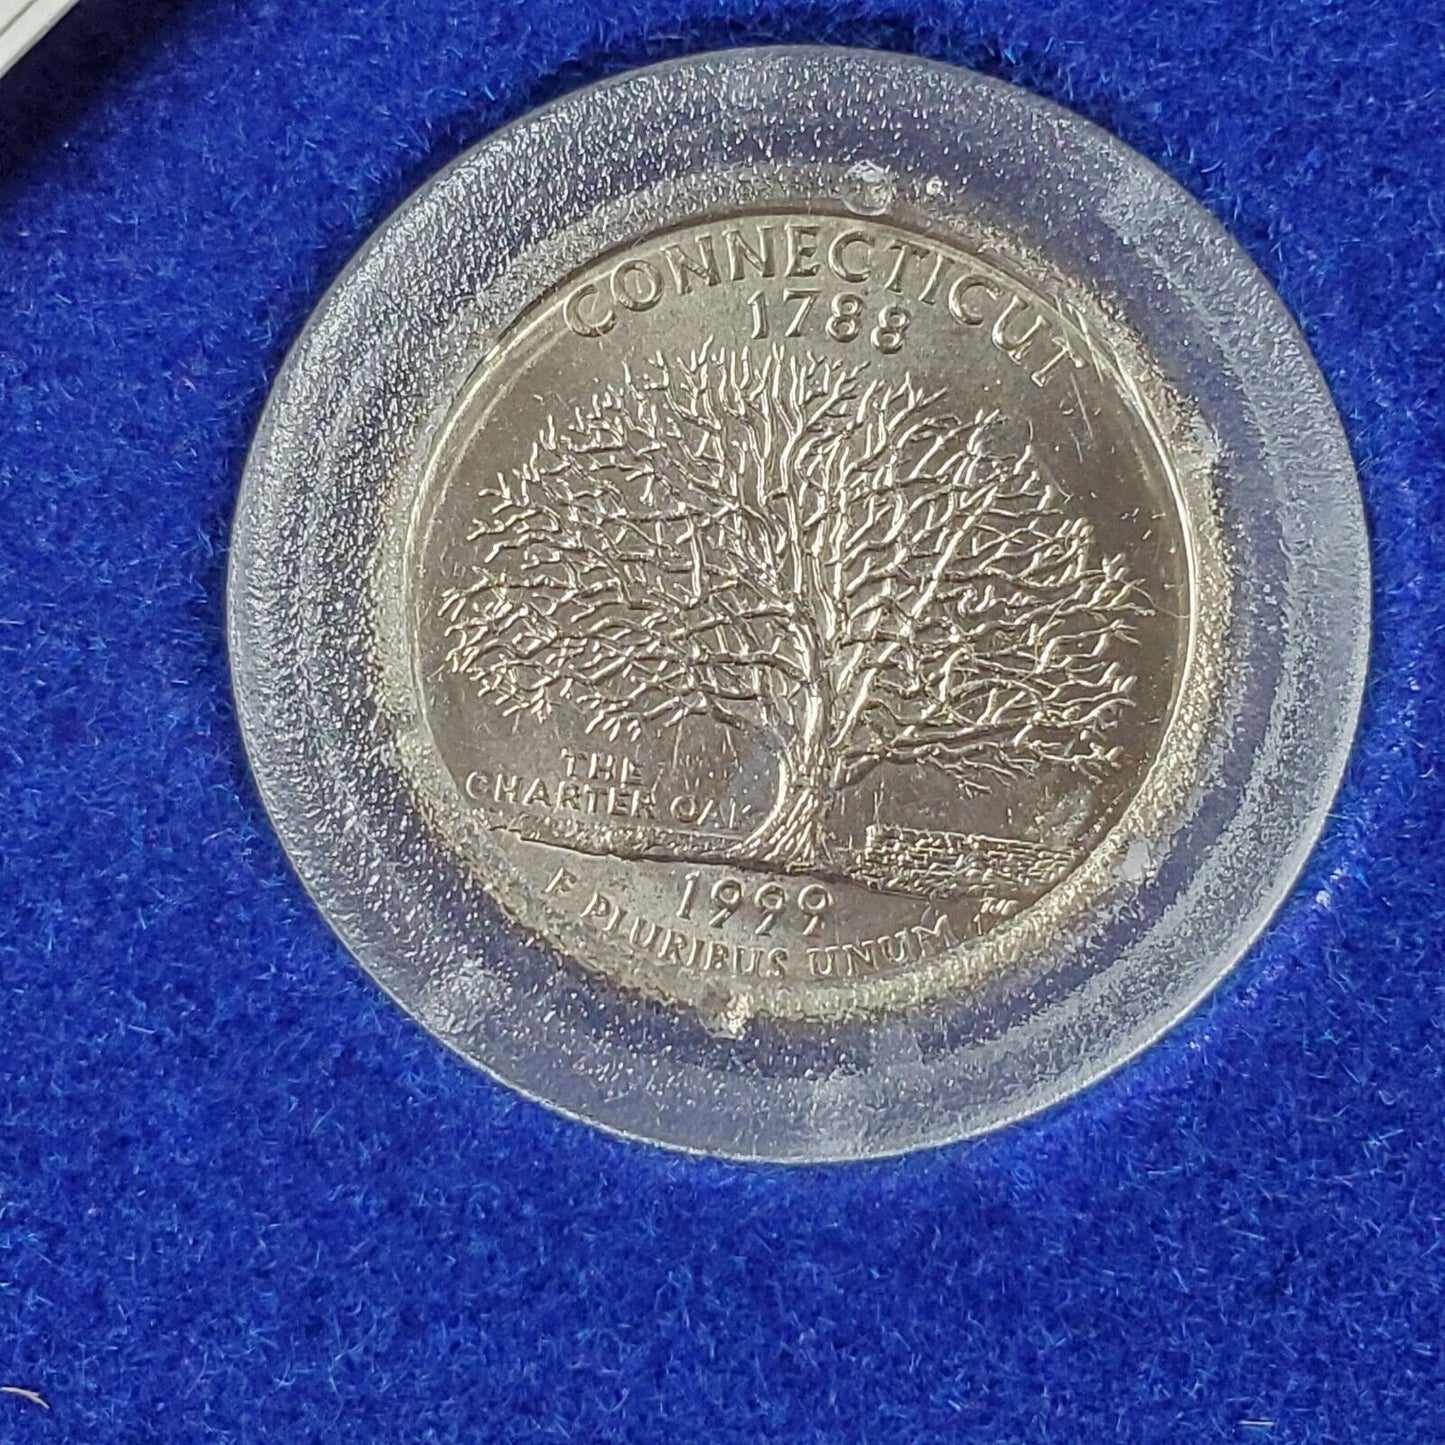 1999 Connecticut State Quarter American Spirit Coin & Figurine Set in Box